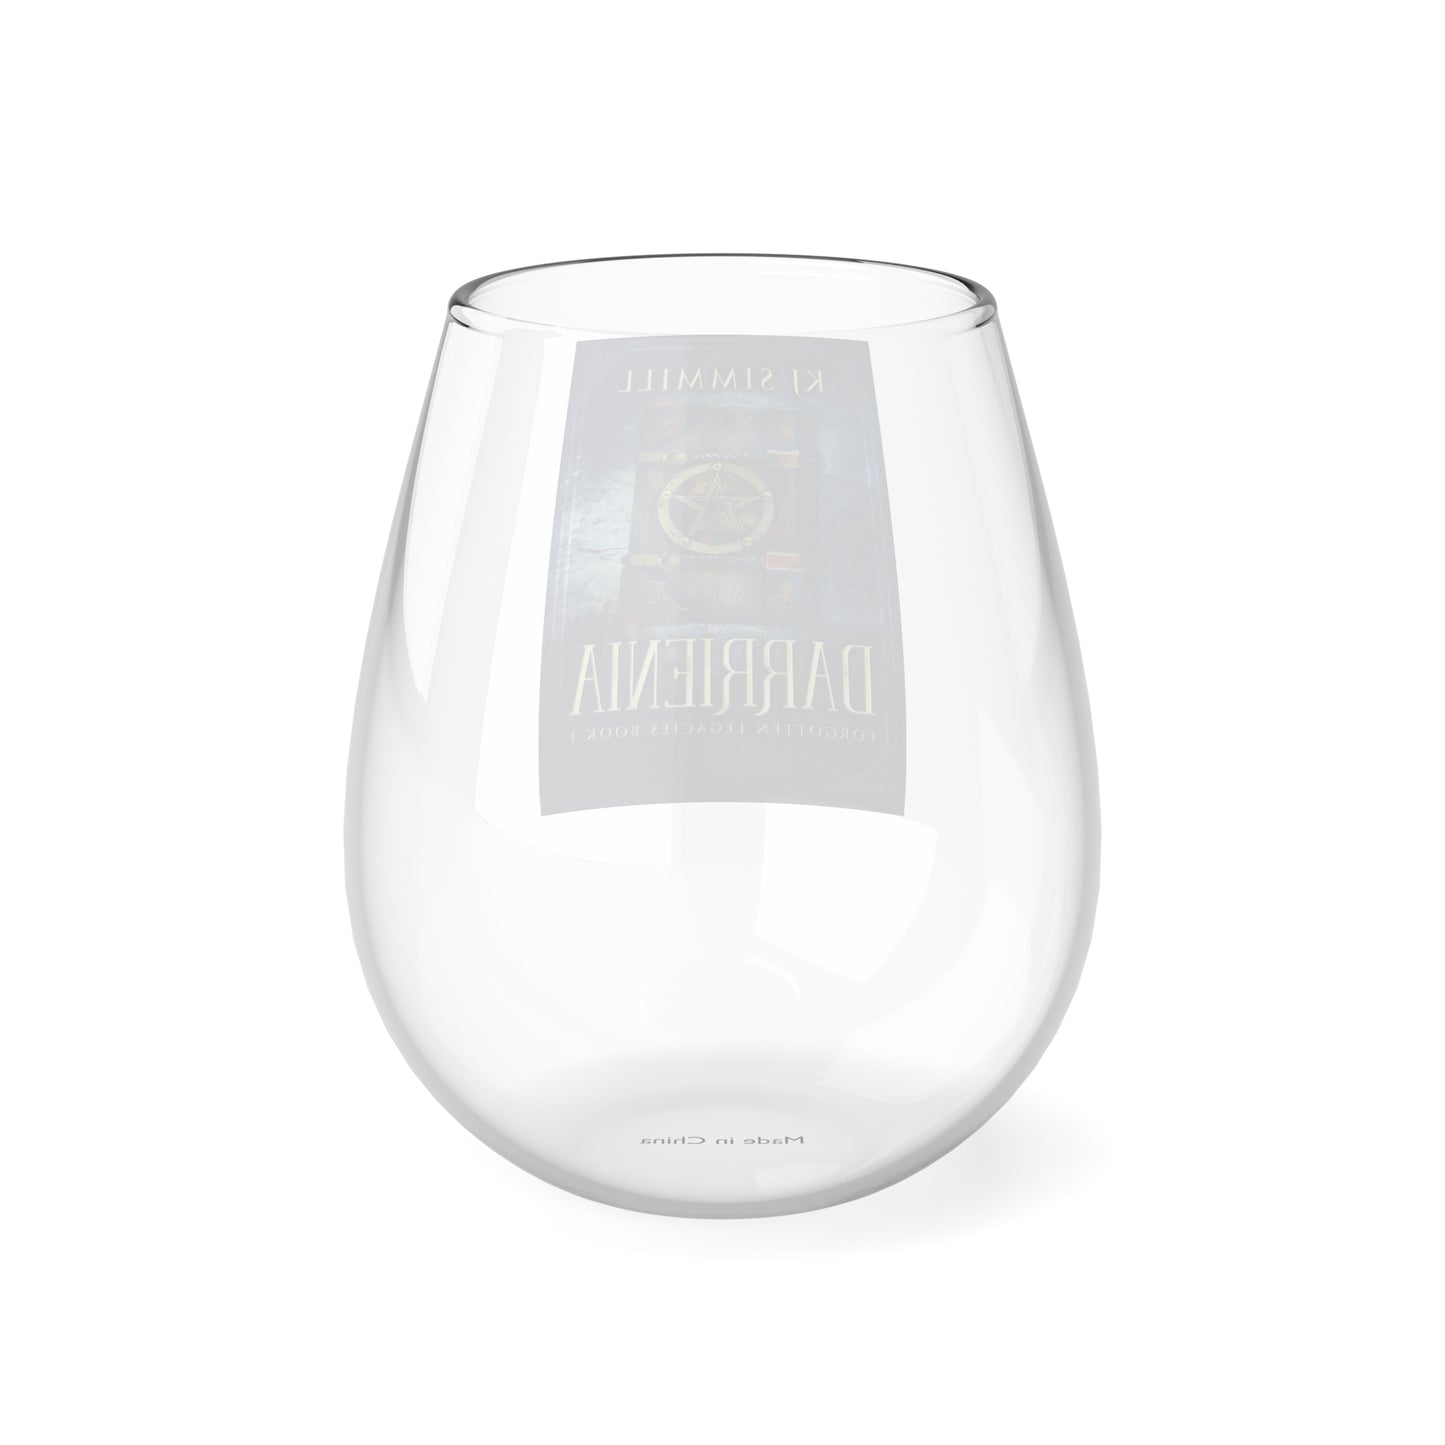 Darrienia - Stemless Wine Glass, 11.75oz